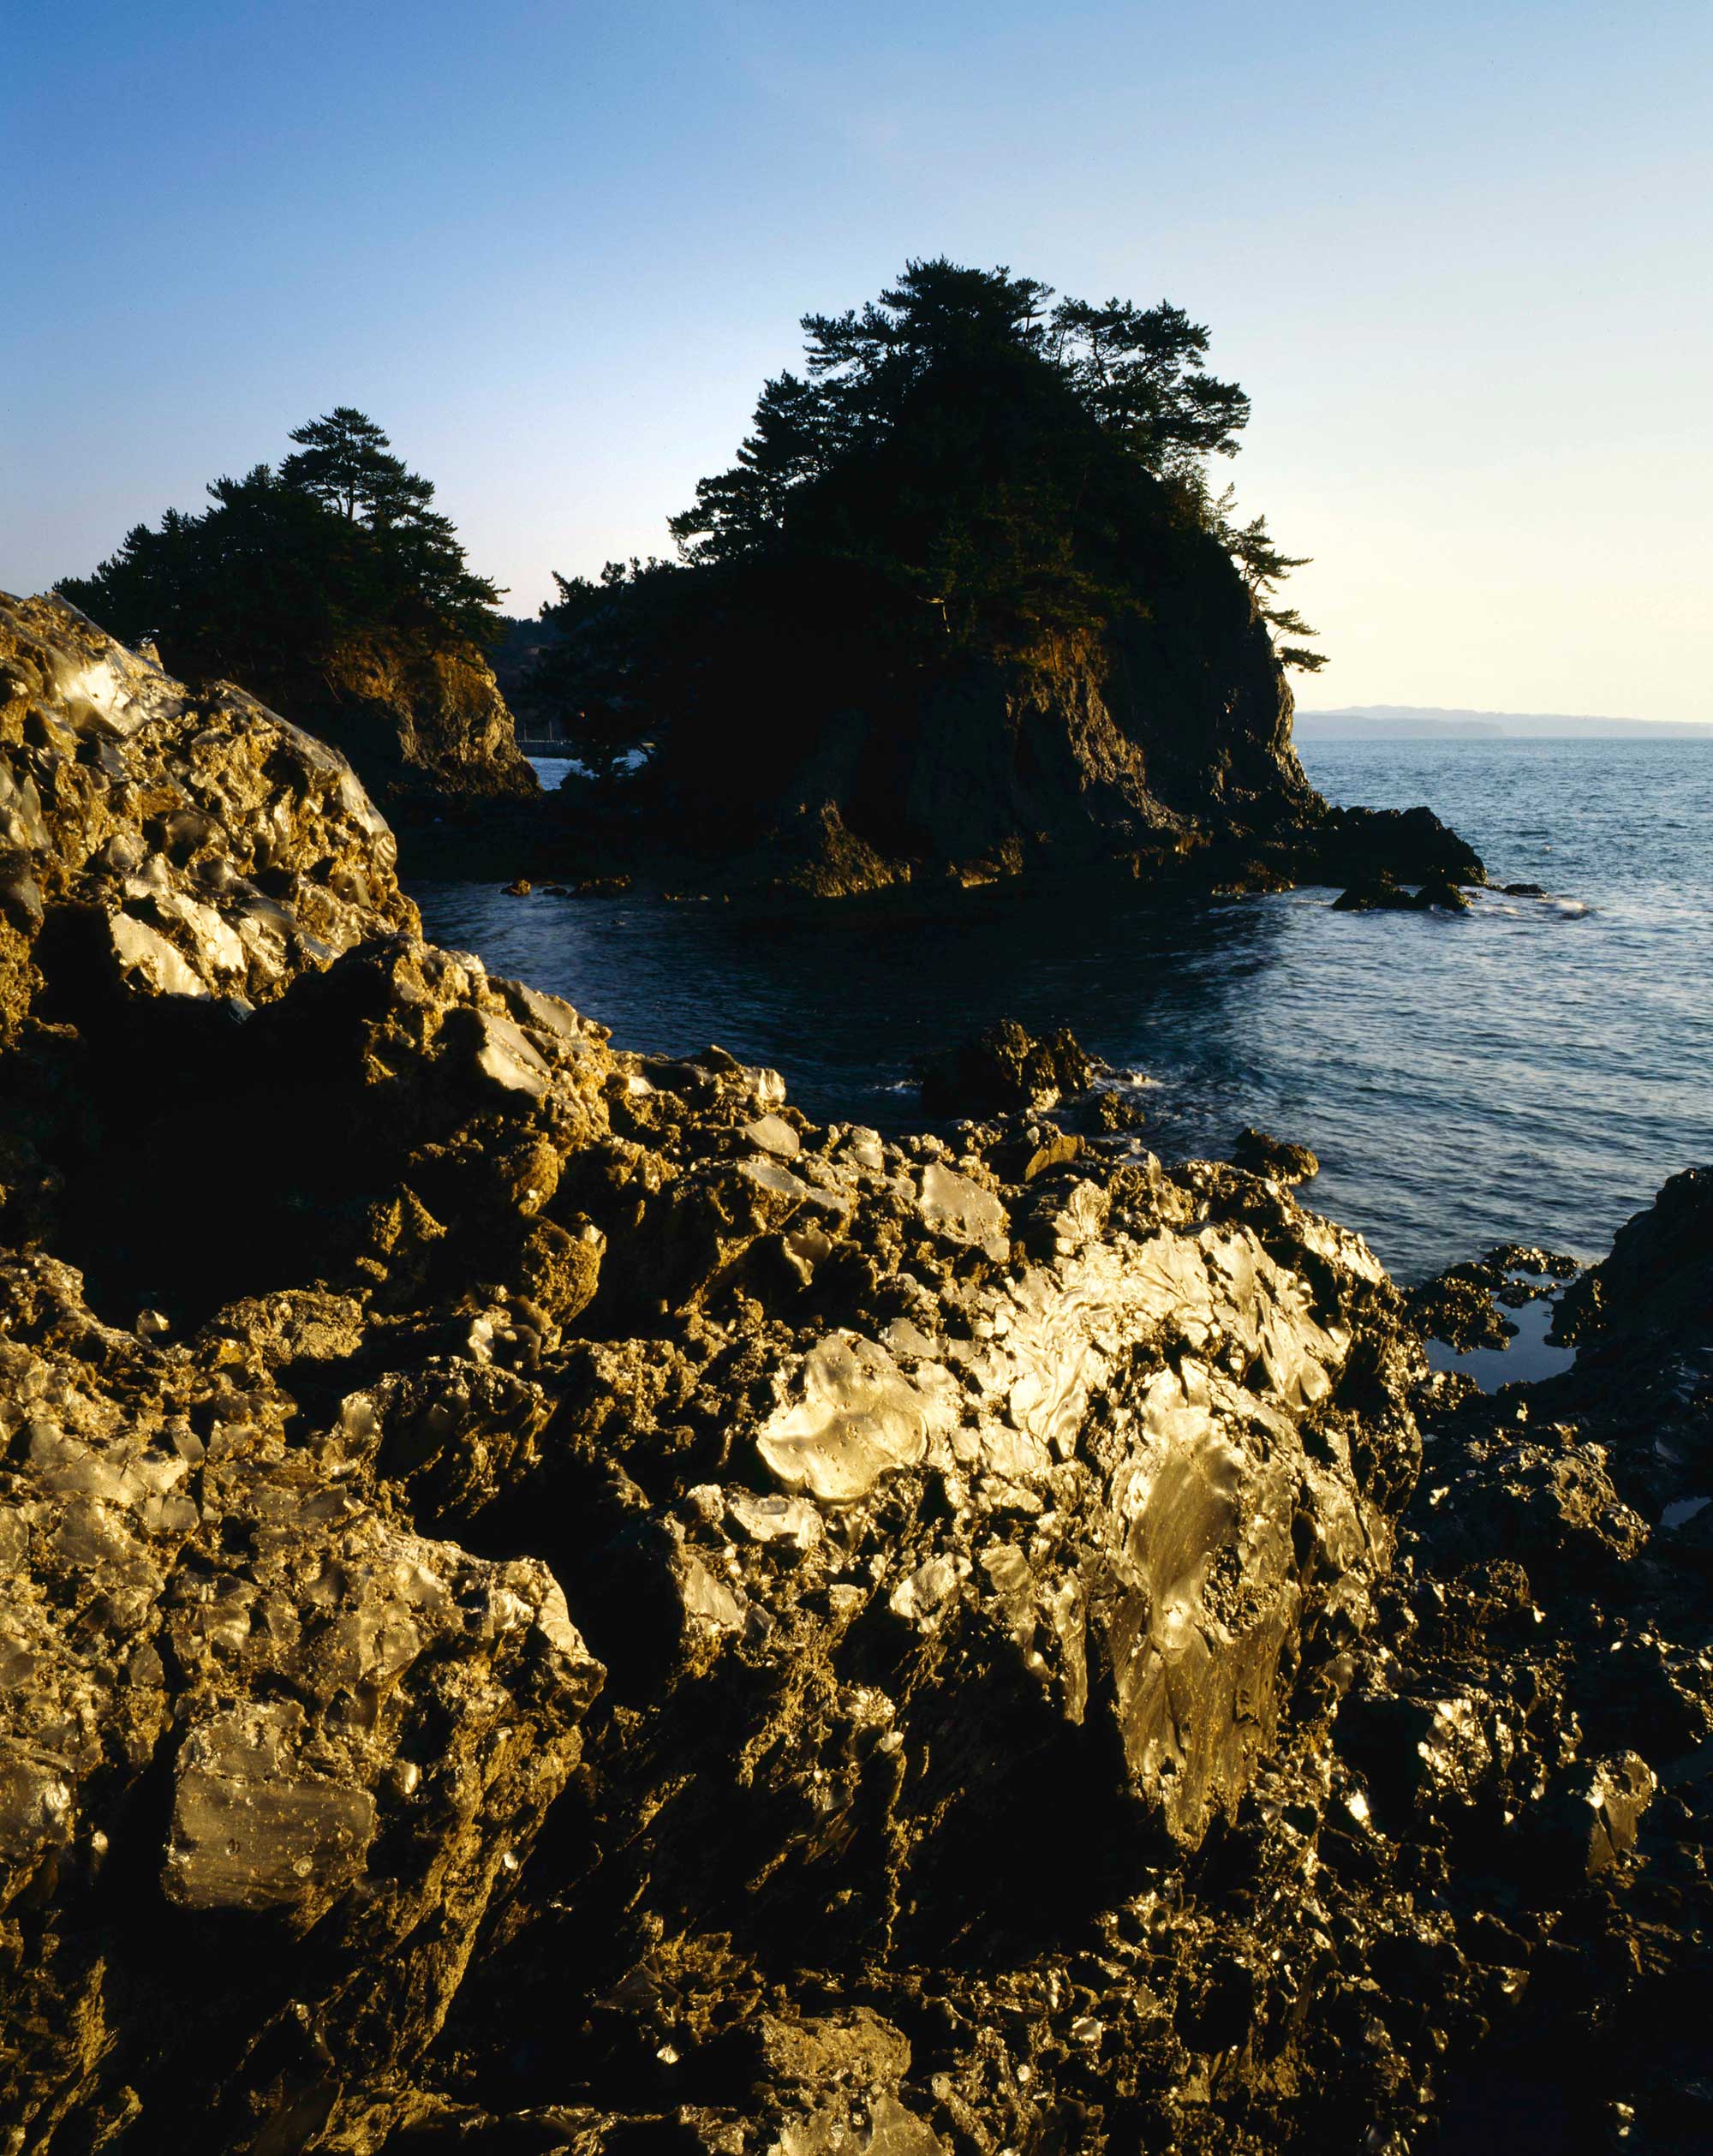 火山によって生まれた姫島黒曜石は全国屈指の産出量で、2万年にわたり採取された。